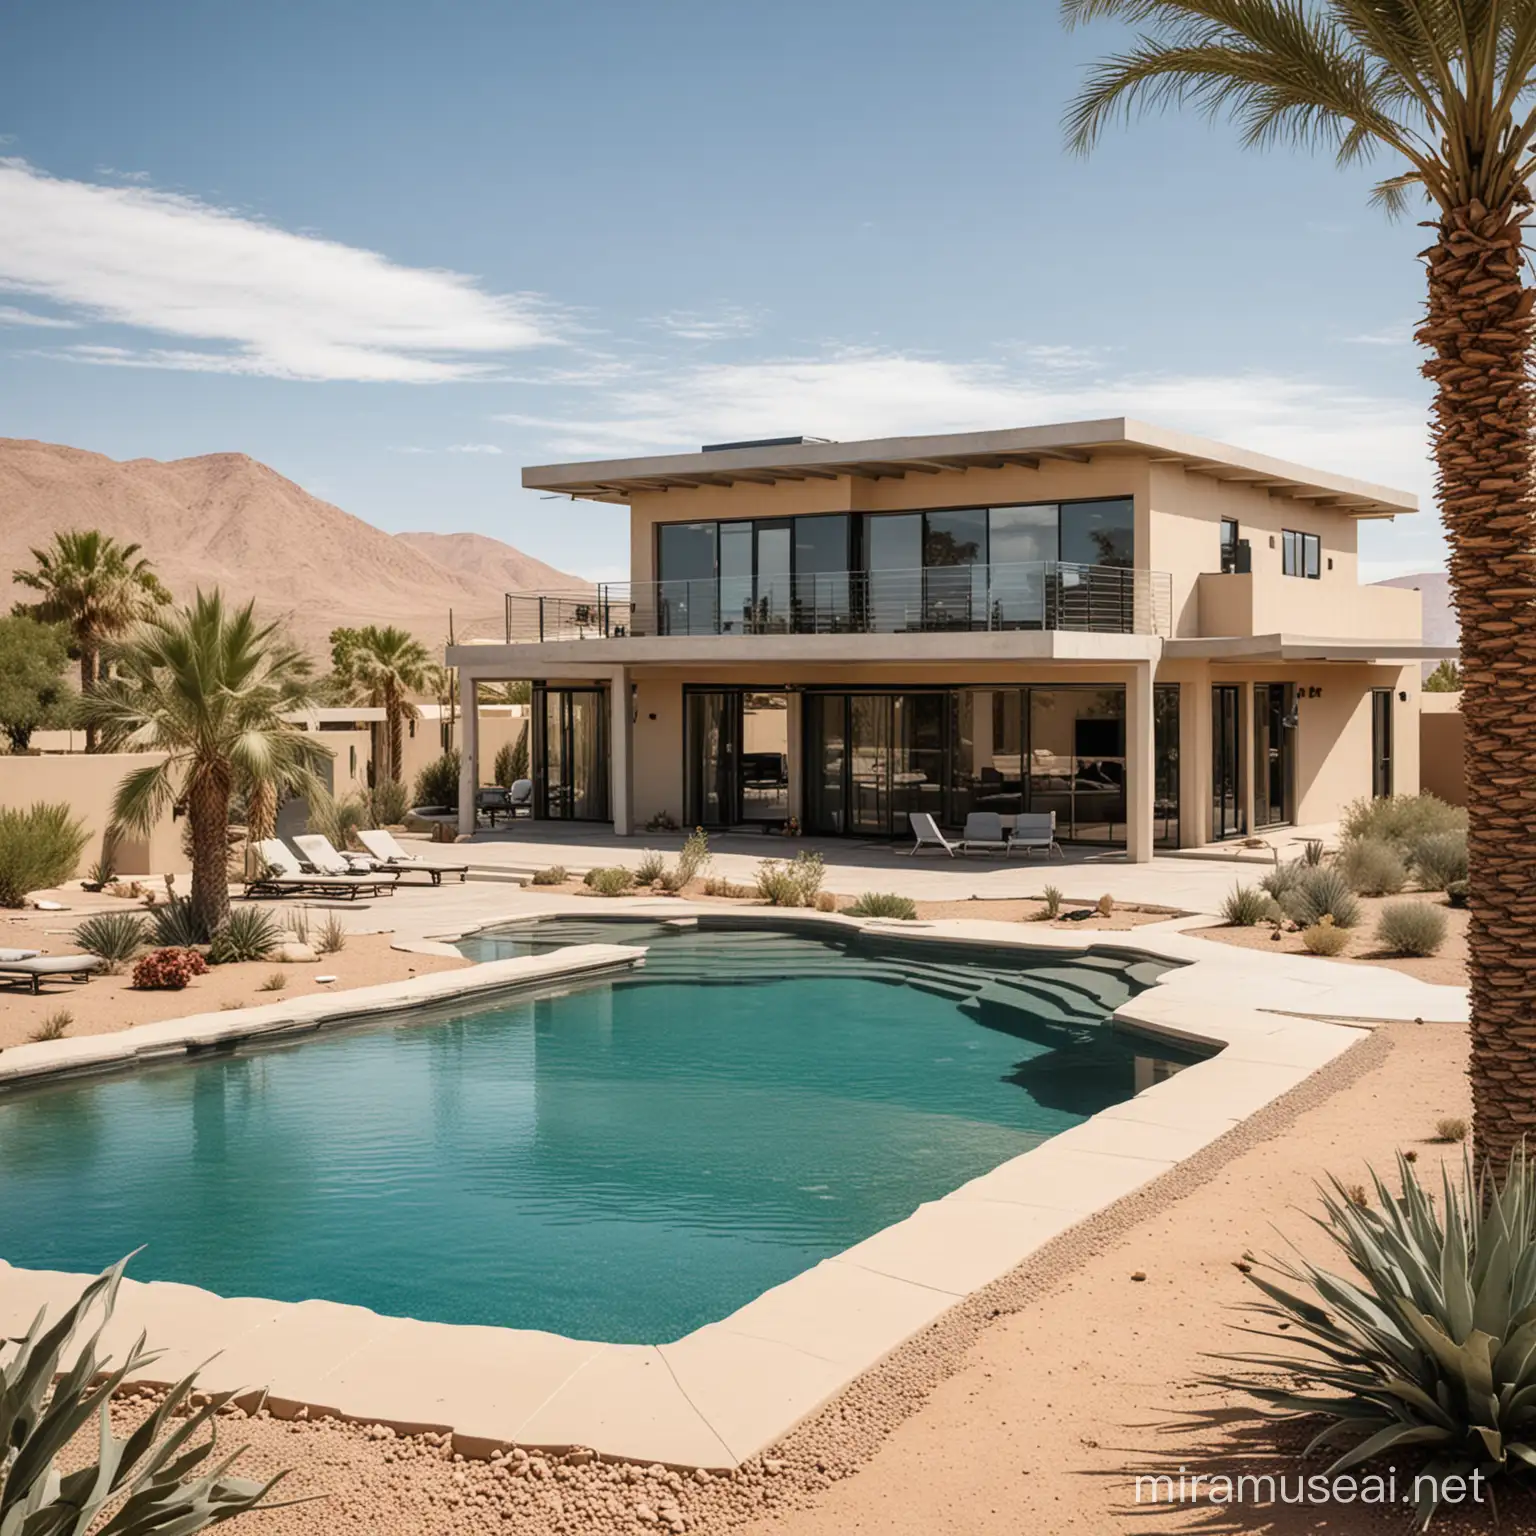 Оазис посреди пустыни с небольшим двухэтажным домом в стиле хайтек и бассейном возле дома